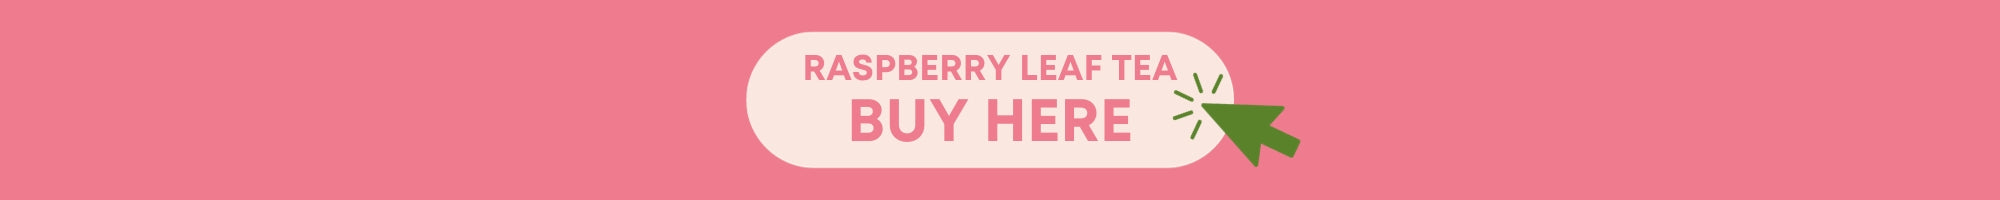 Raspberry leaf buy here